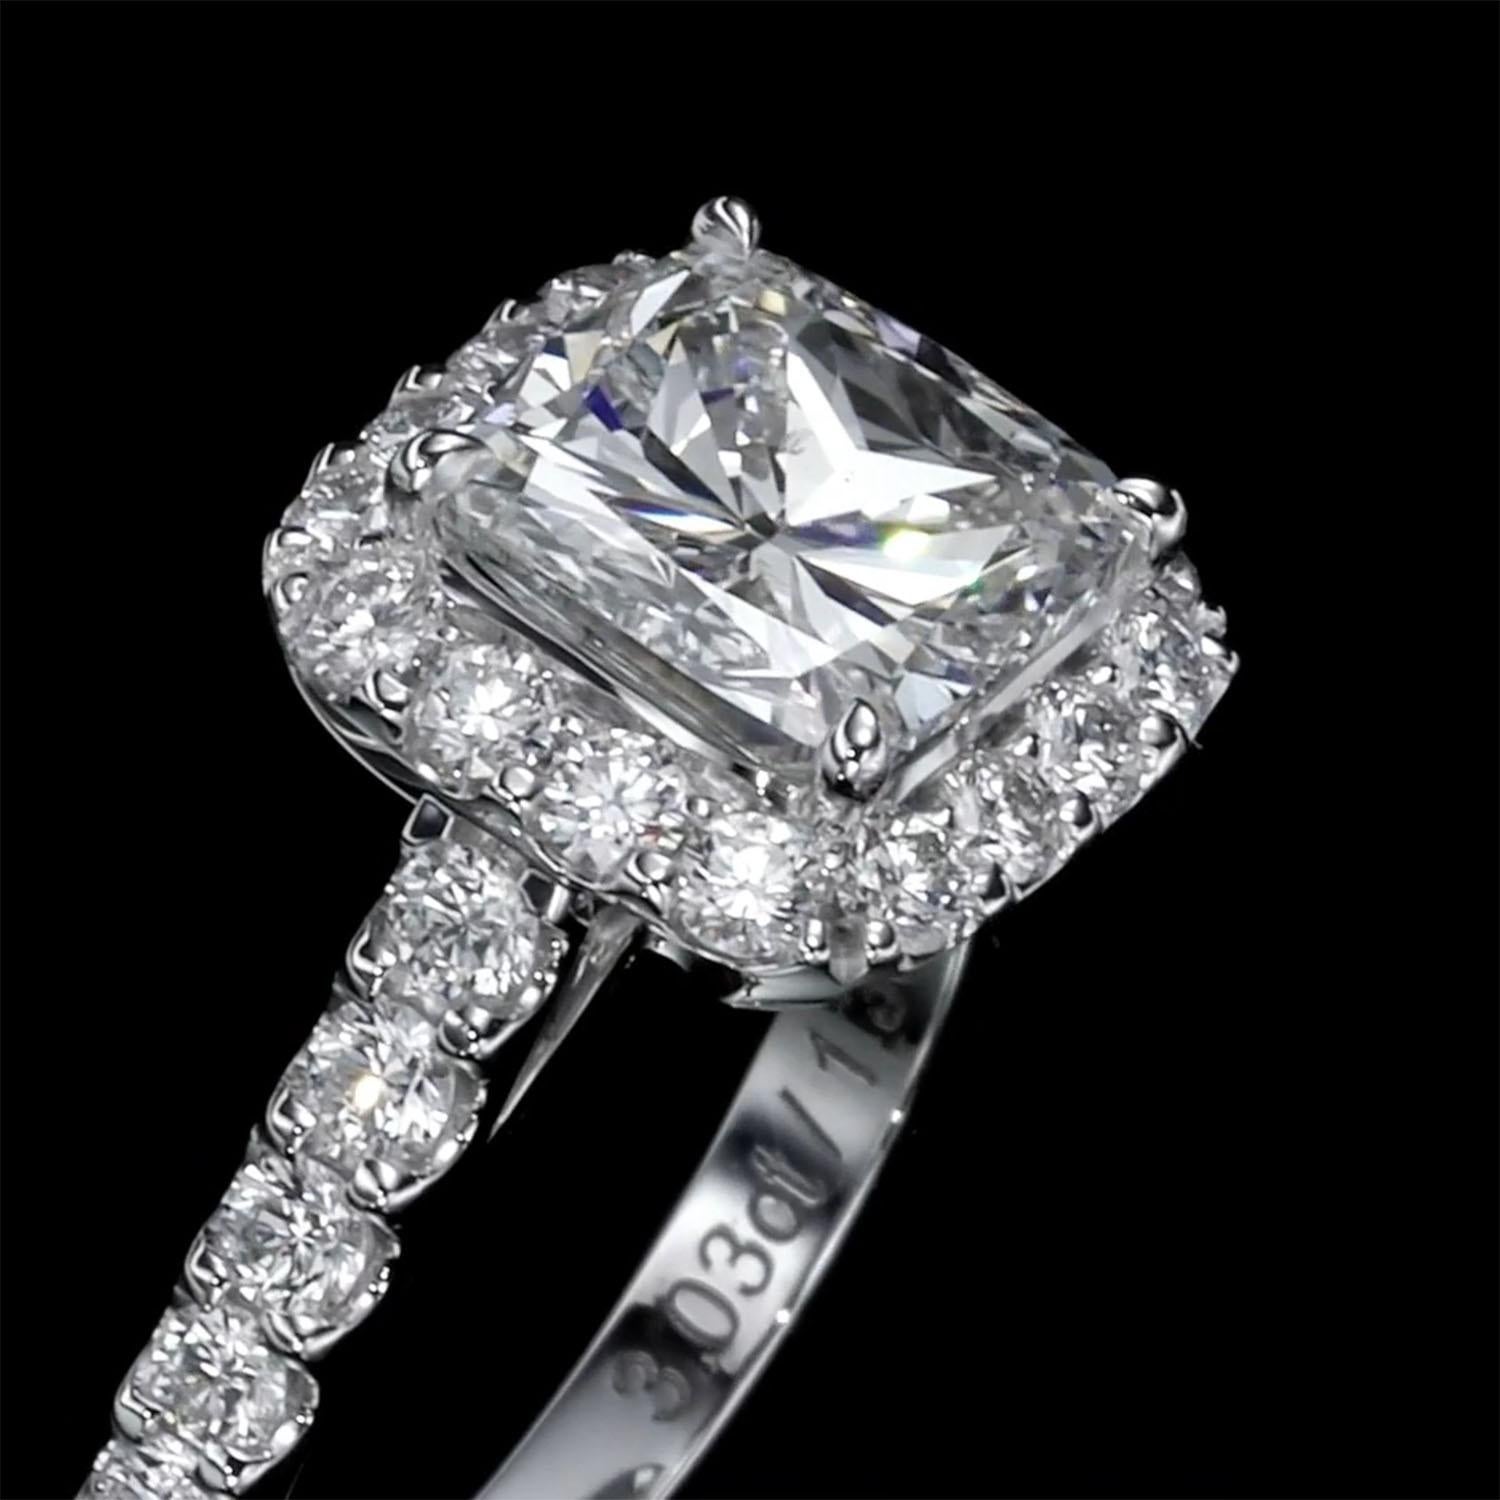 Wir stellen Ihnen Faith vor, einen atemberaubenden Diamantring, der Ihnen den Atem rauben wird. Dieses einzigartige Schmuckstück enthält einen wunderschönen natürlichen Diamanten im Kissenschliff von 3,03 Karat, der von einem Halo aus exquisiten